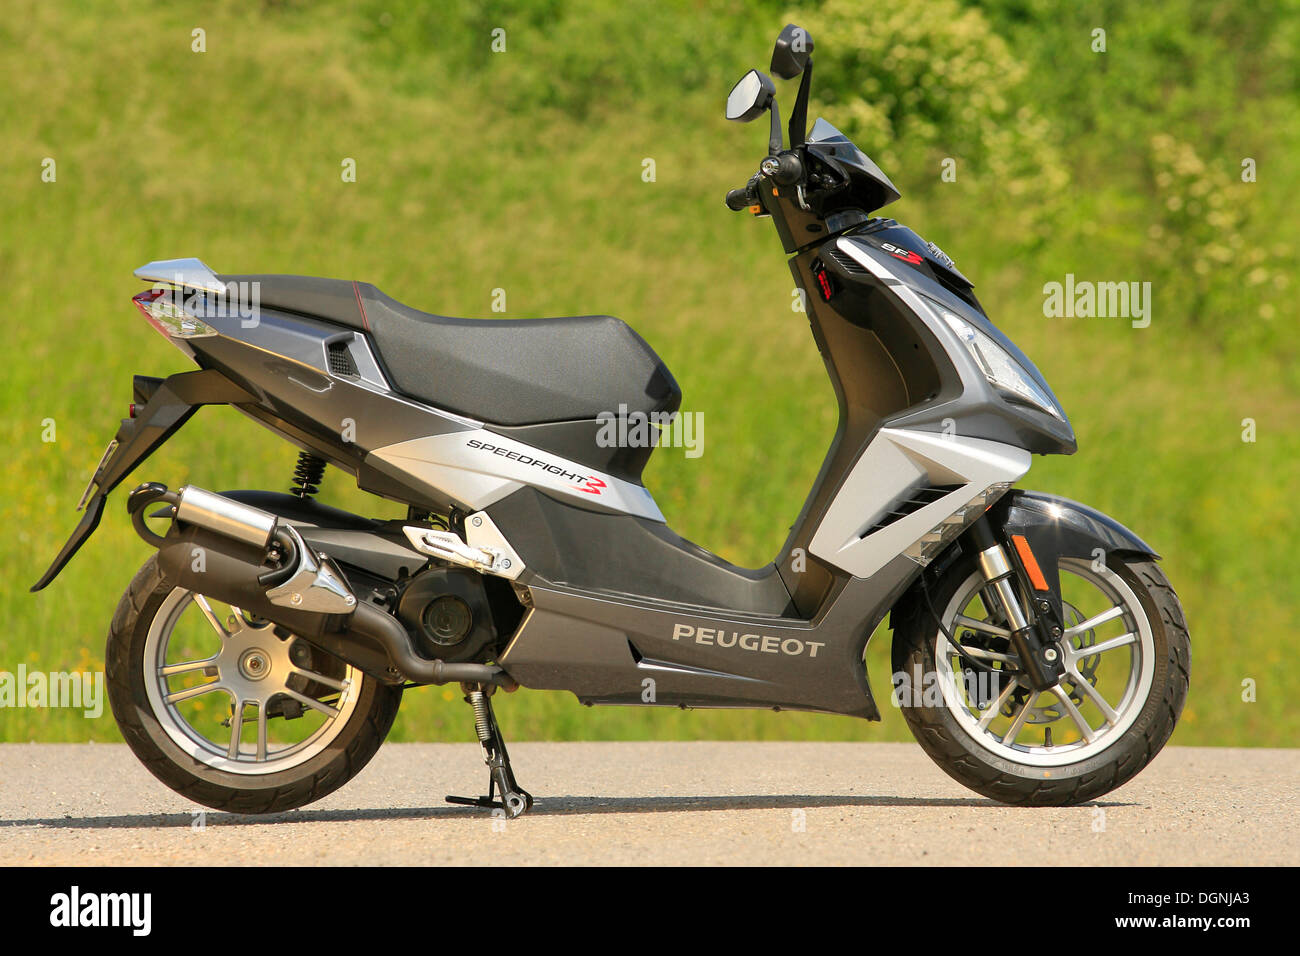 Peugeot scooter immagini e fotografie stock ad alta risoluzione - Alamy